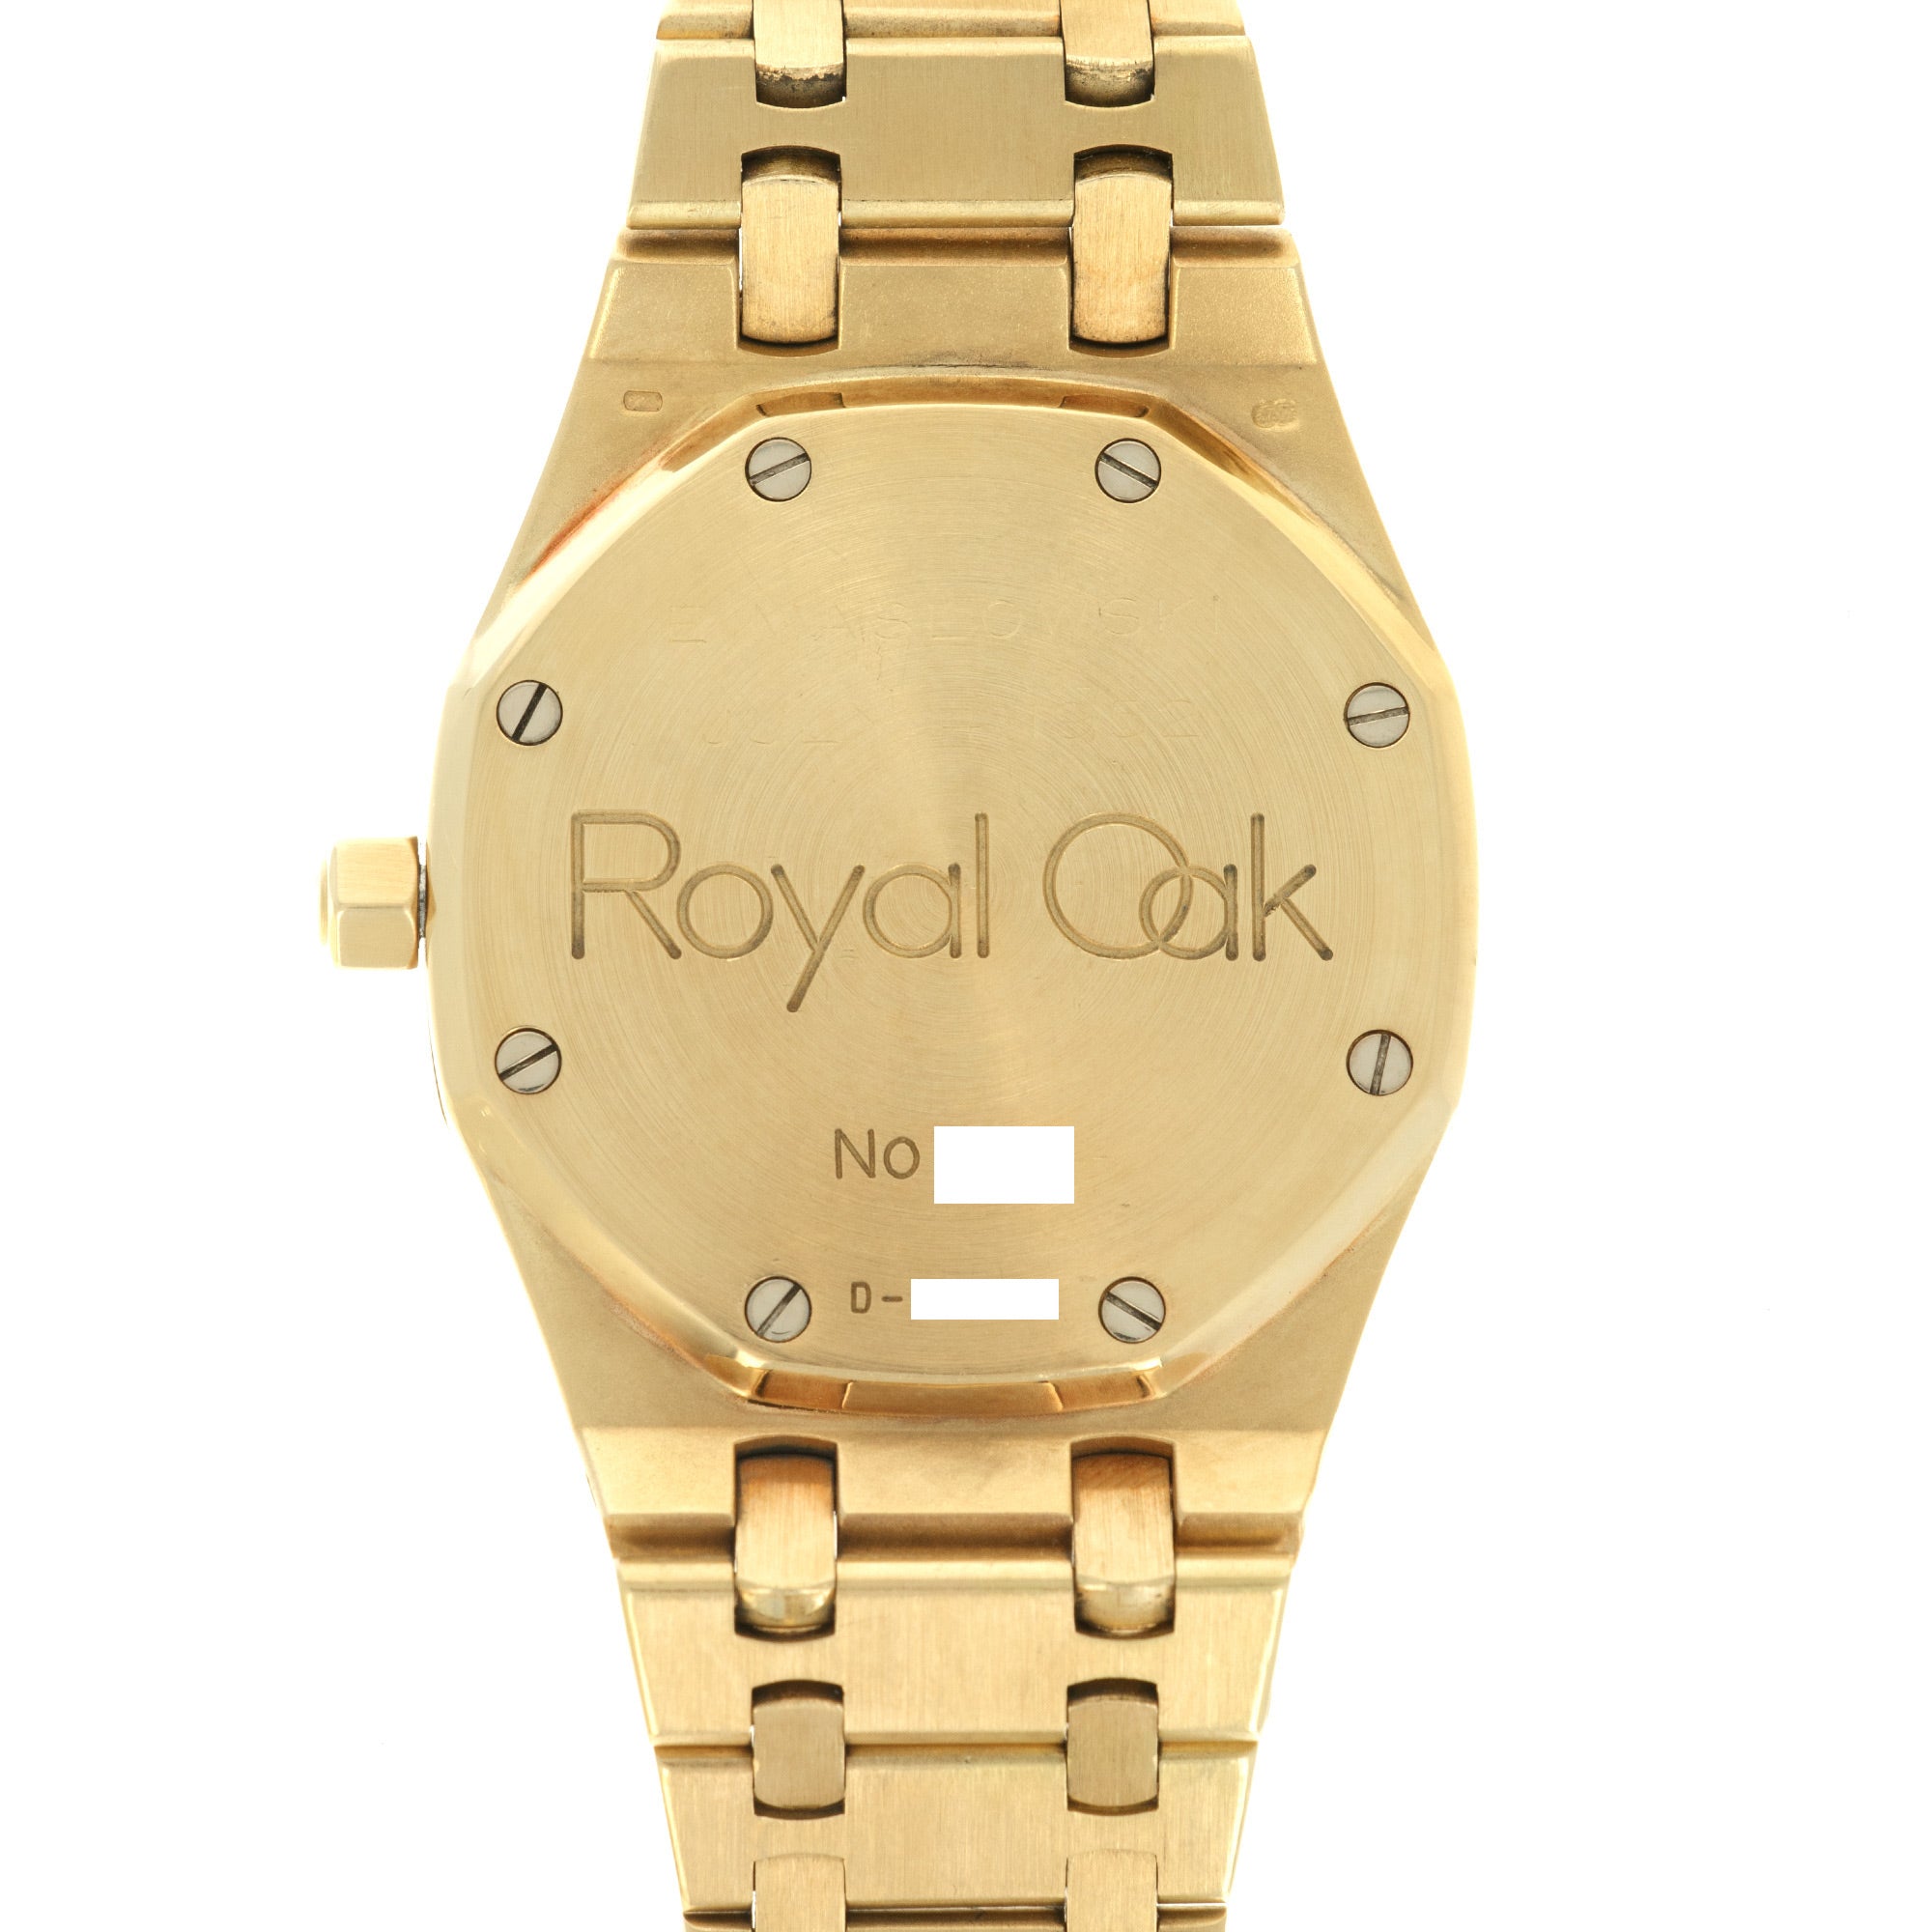 Audemars Piguet - Audemars Piguet Yellow Gold Royal Oak Watch, Ref. 14790 - The Keystone Watches